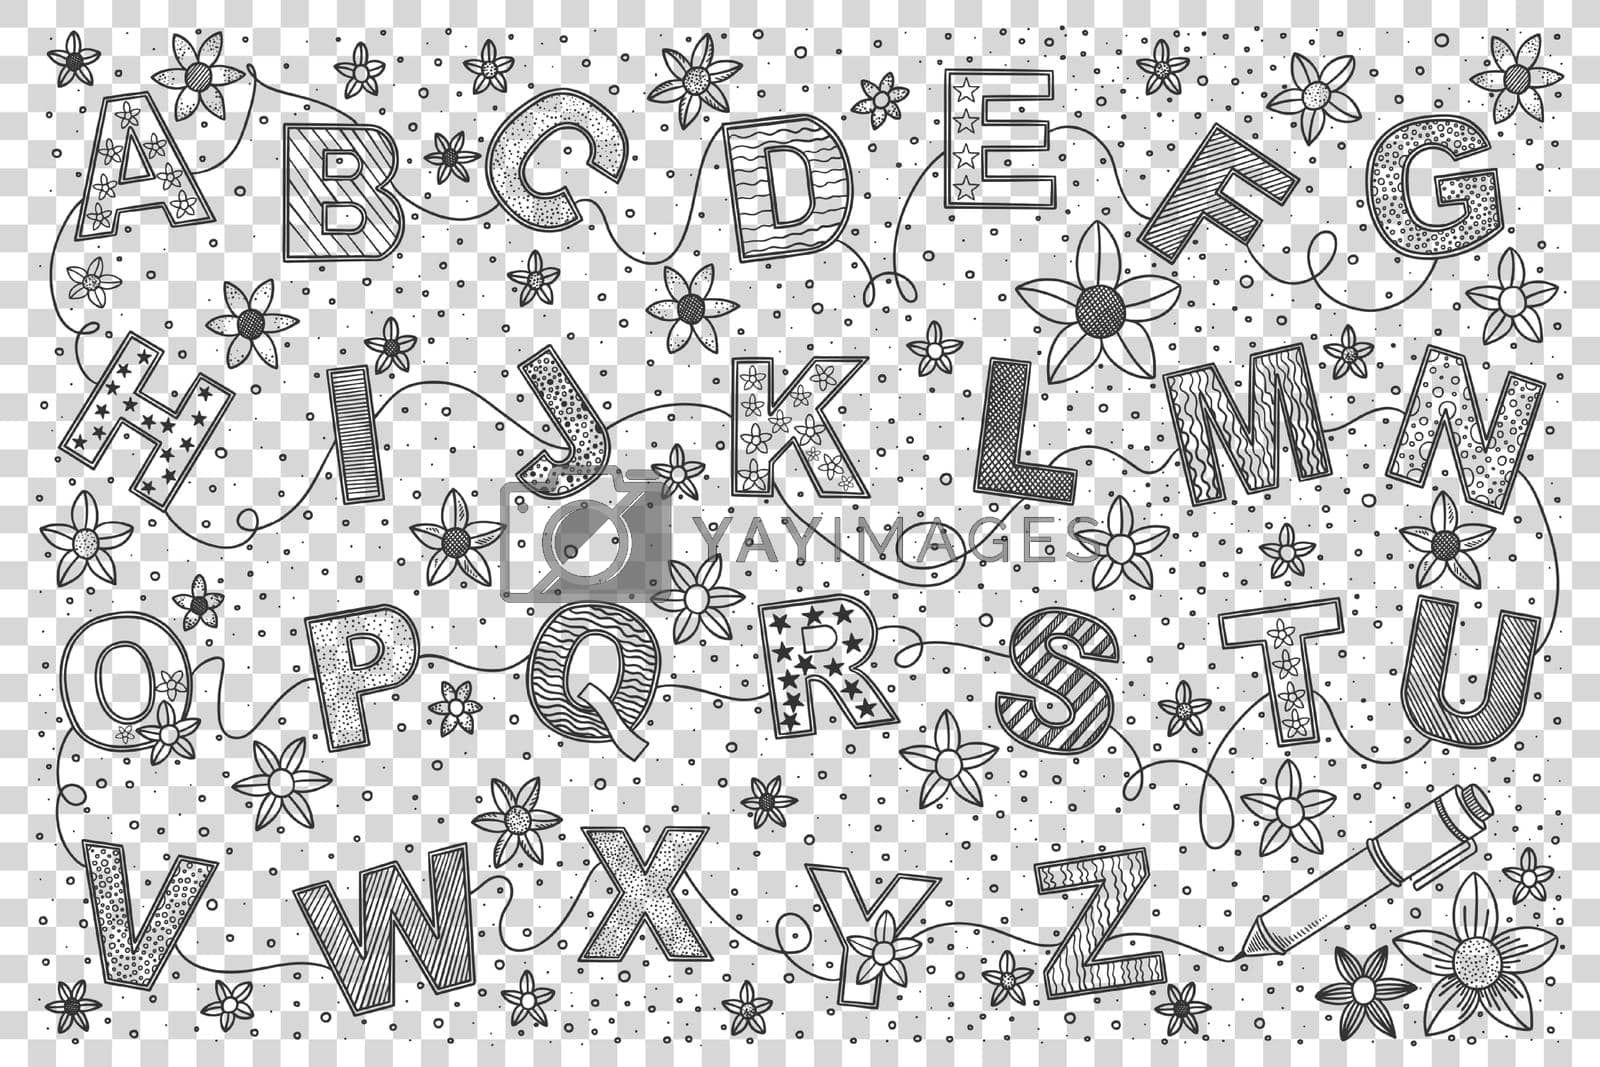 Royalty free image of English alphabet doodle set by Vasilyeva